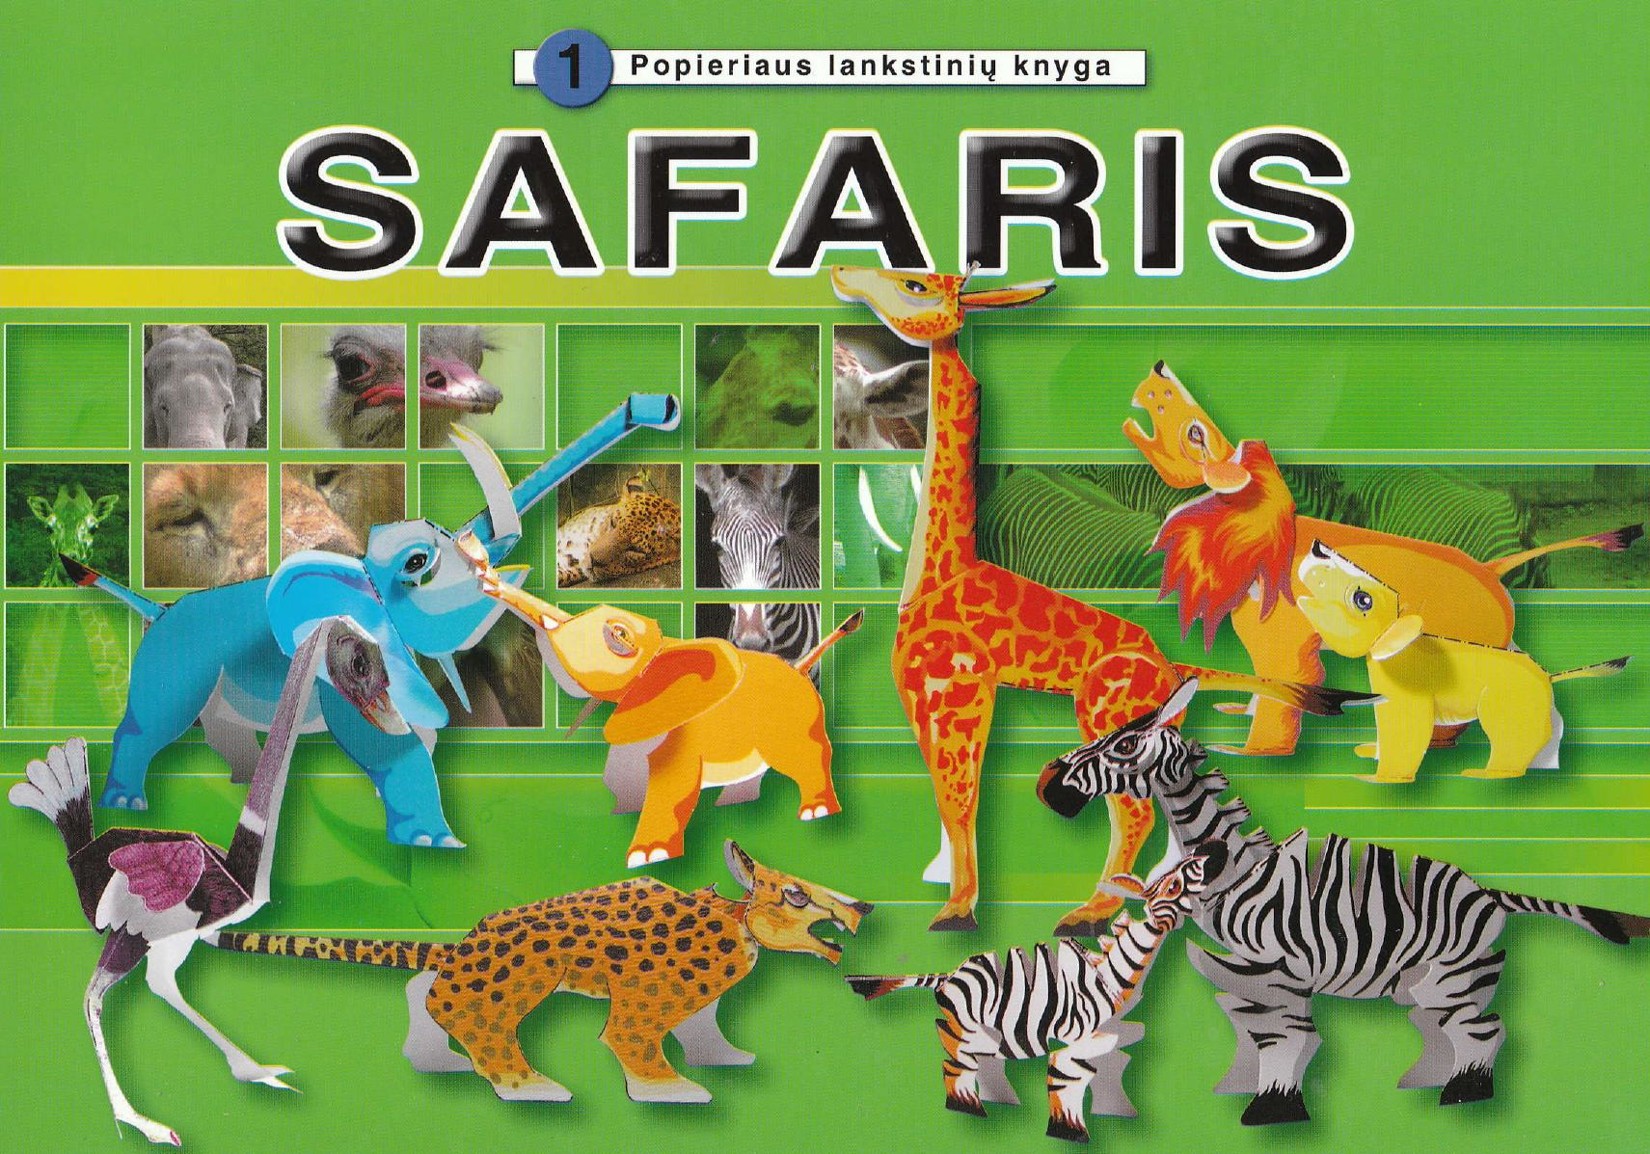 Popieriaus lankstinių knyga Safaris -2001 CNN